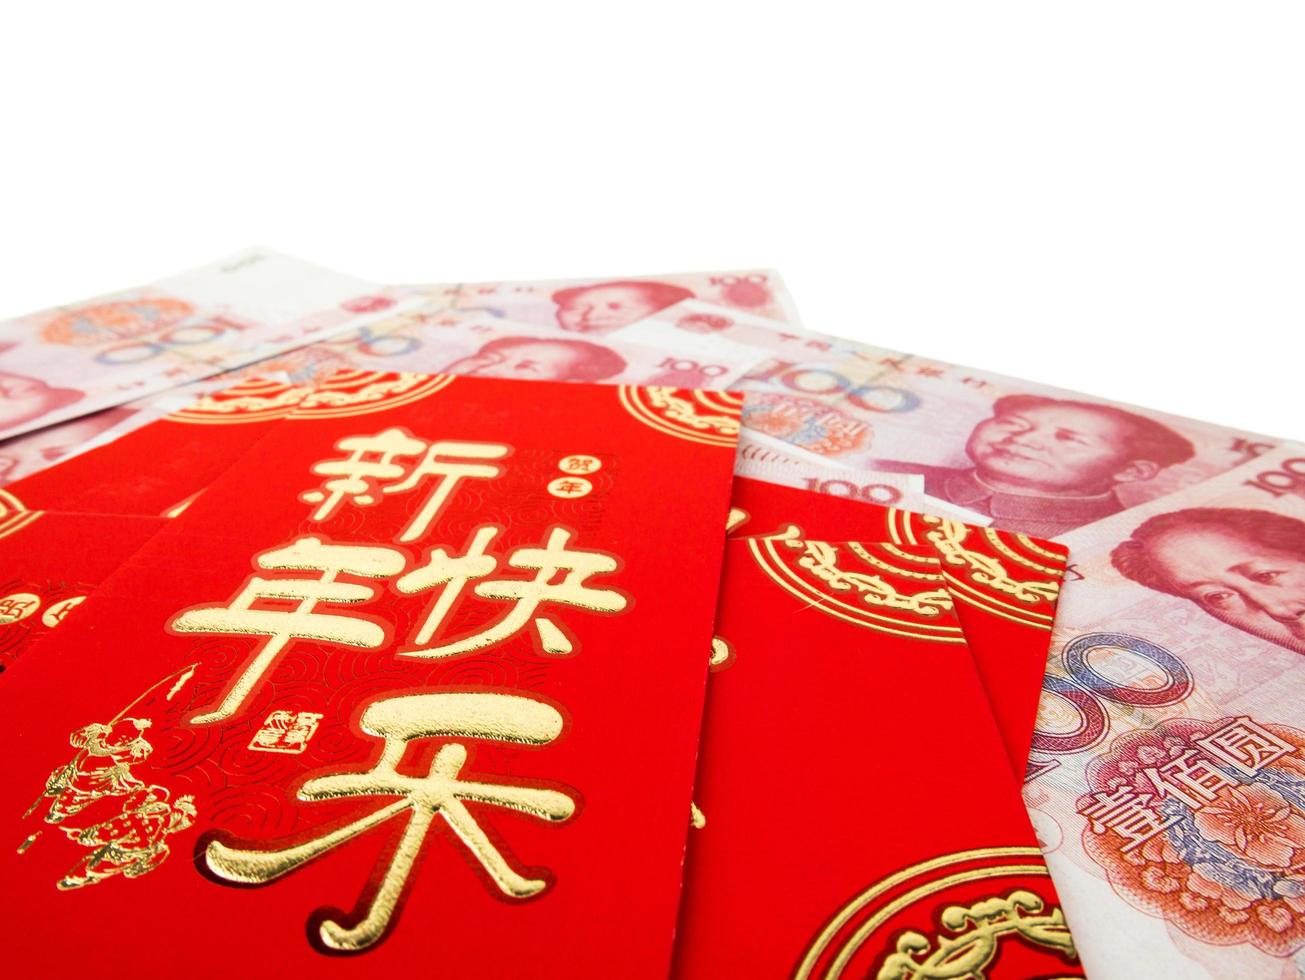 enveloppes rouges chinoises sur argent chinois pile de billets de cent yuans isolés sur fond blanc. texte chinois sur enveloppe signifiant joyeux nouvel an chinois photo